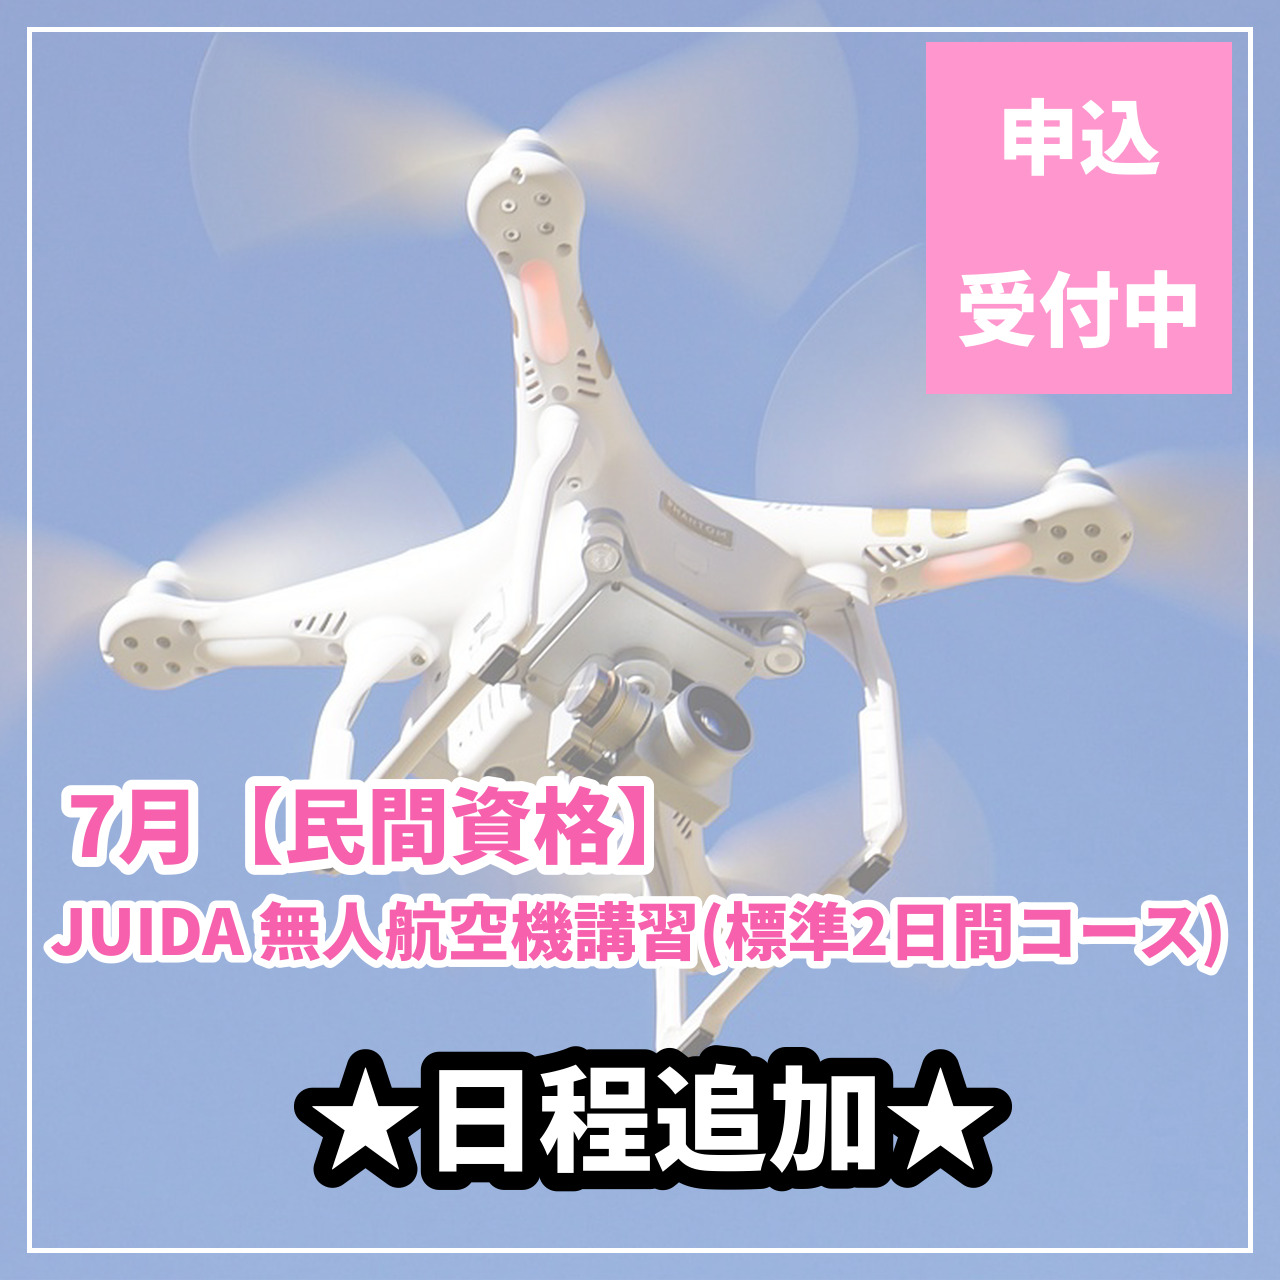 7月【民間資格】JUIDA無人航空機講習(標準2日間コース)の日程追加しました！